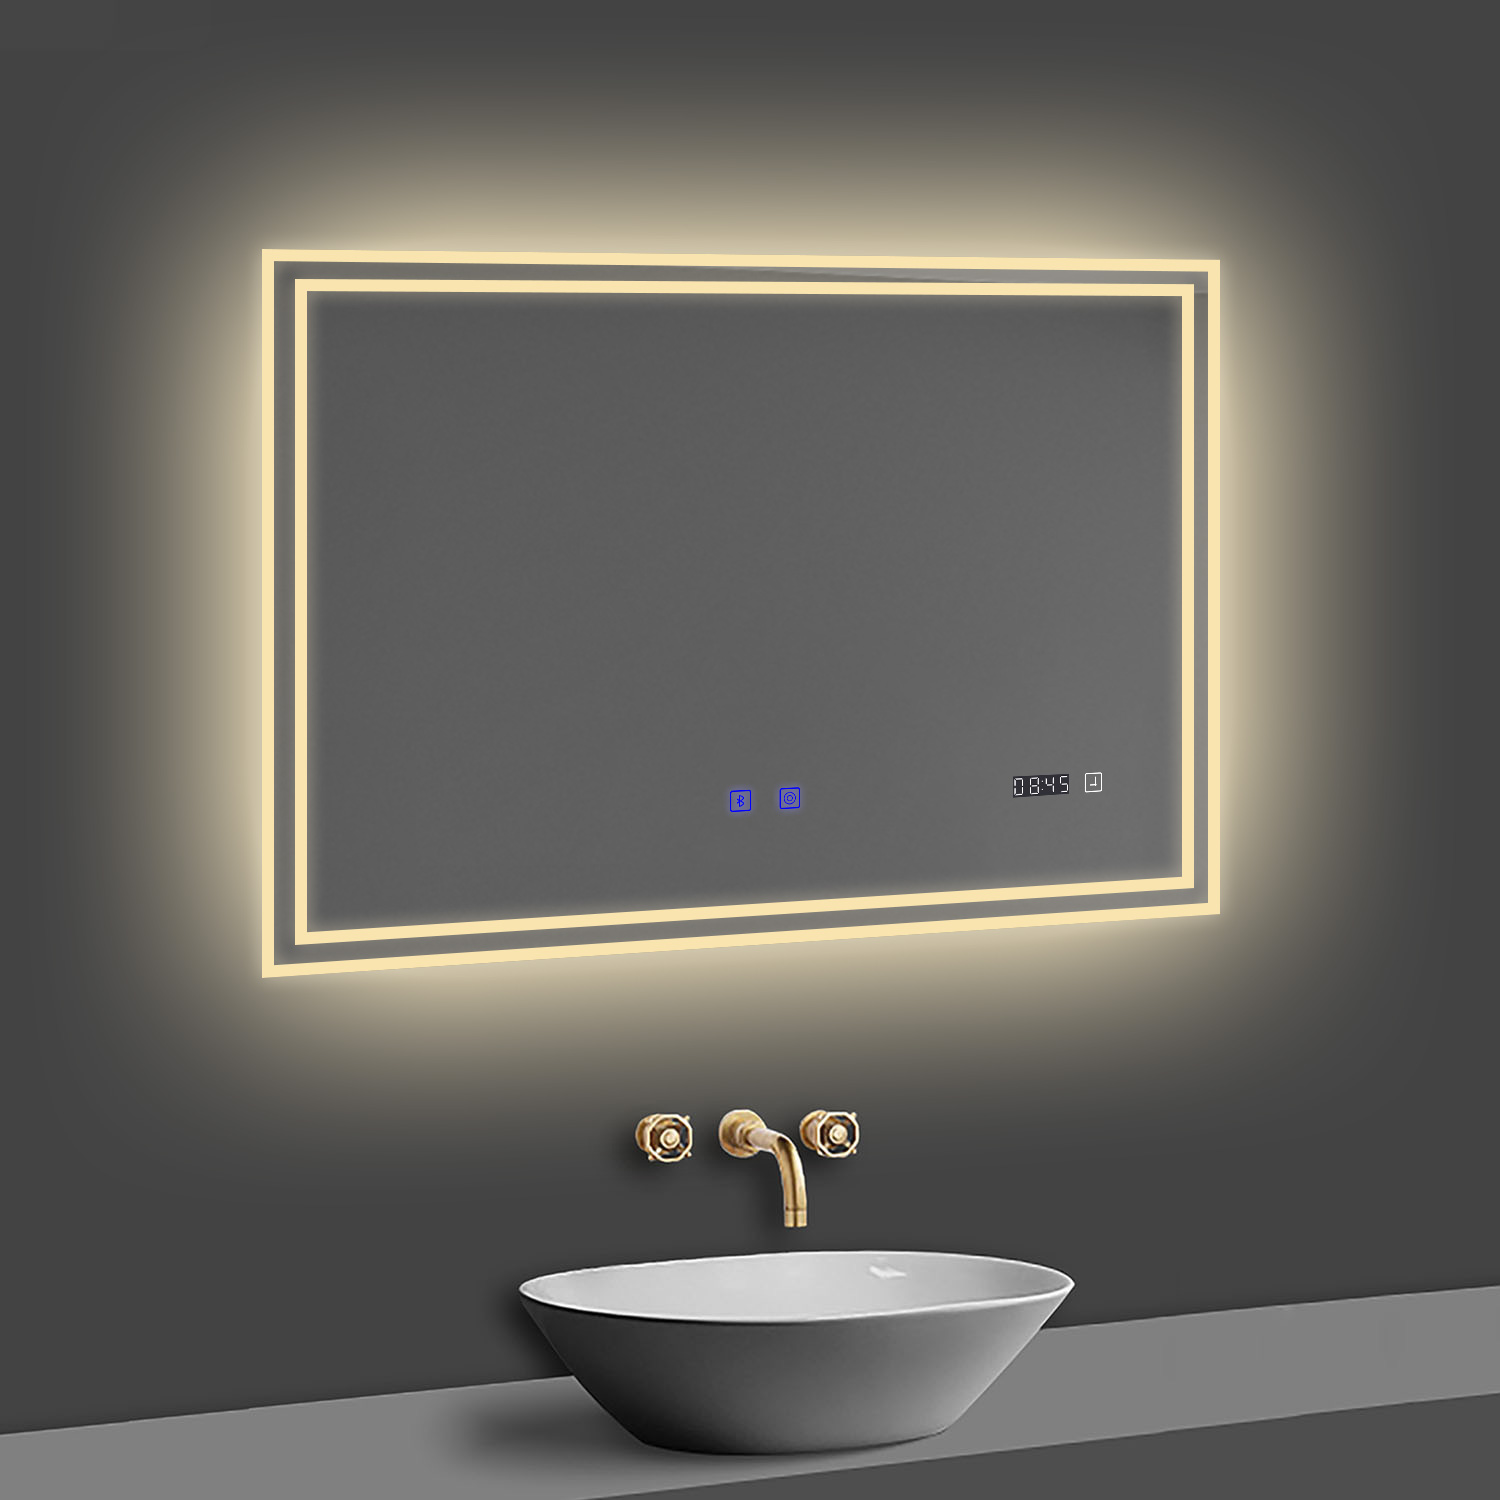 LED Badspiegel 80x60 cm Bluetooth Uhr TOUCH BESCHLAGFREI Wandspiegel Kalt/Neutral/Warmweiß ,Dimmbar